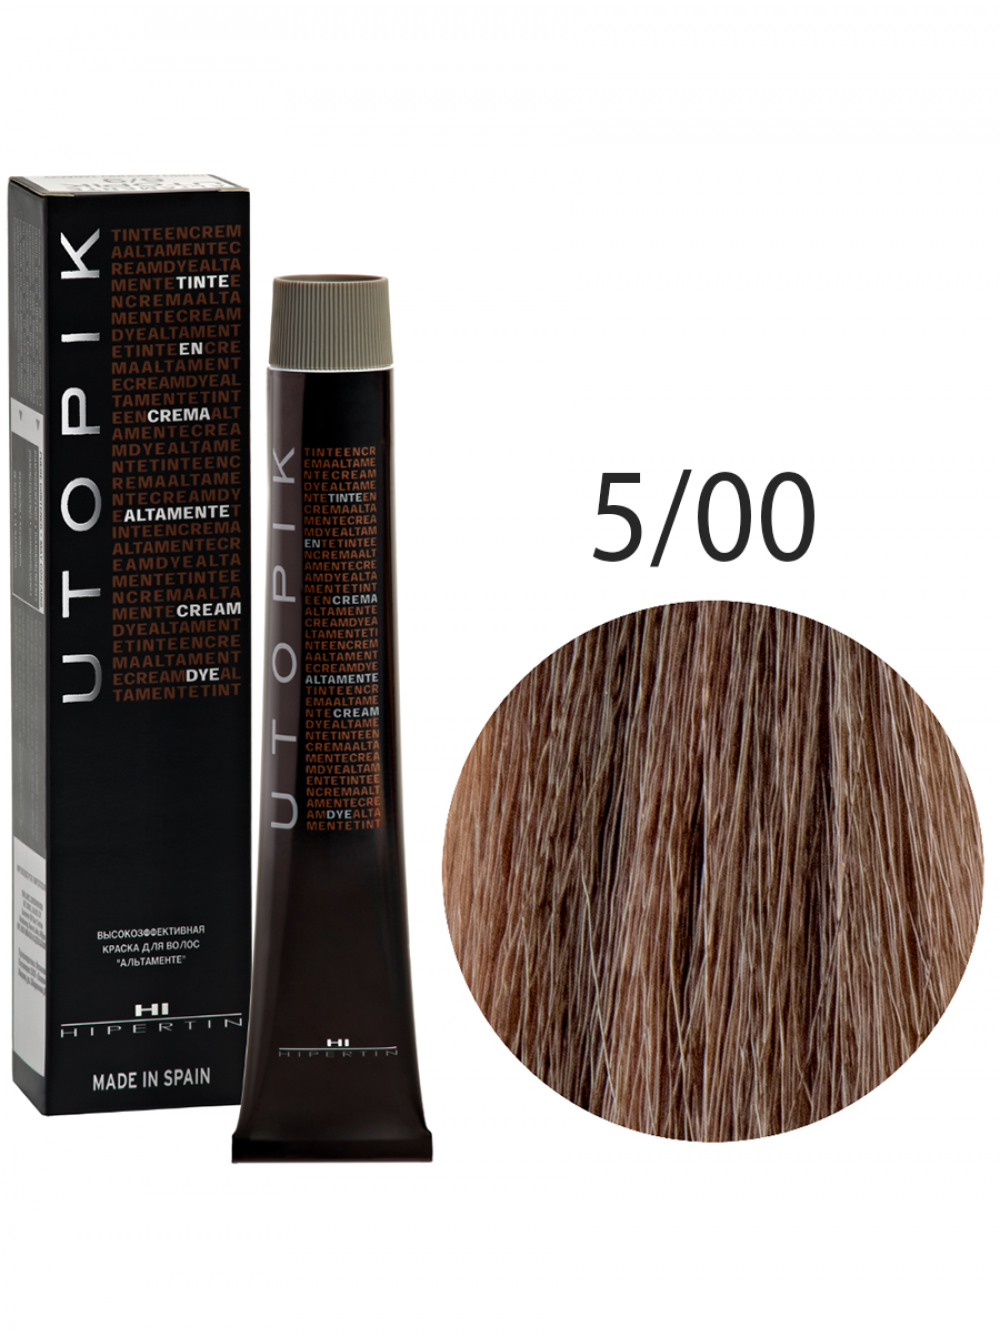 Краска для волос Utopik Altamente 5/00U, светлый шатен интенсивный, 60 мл